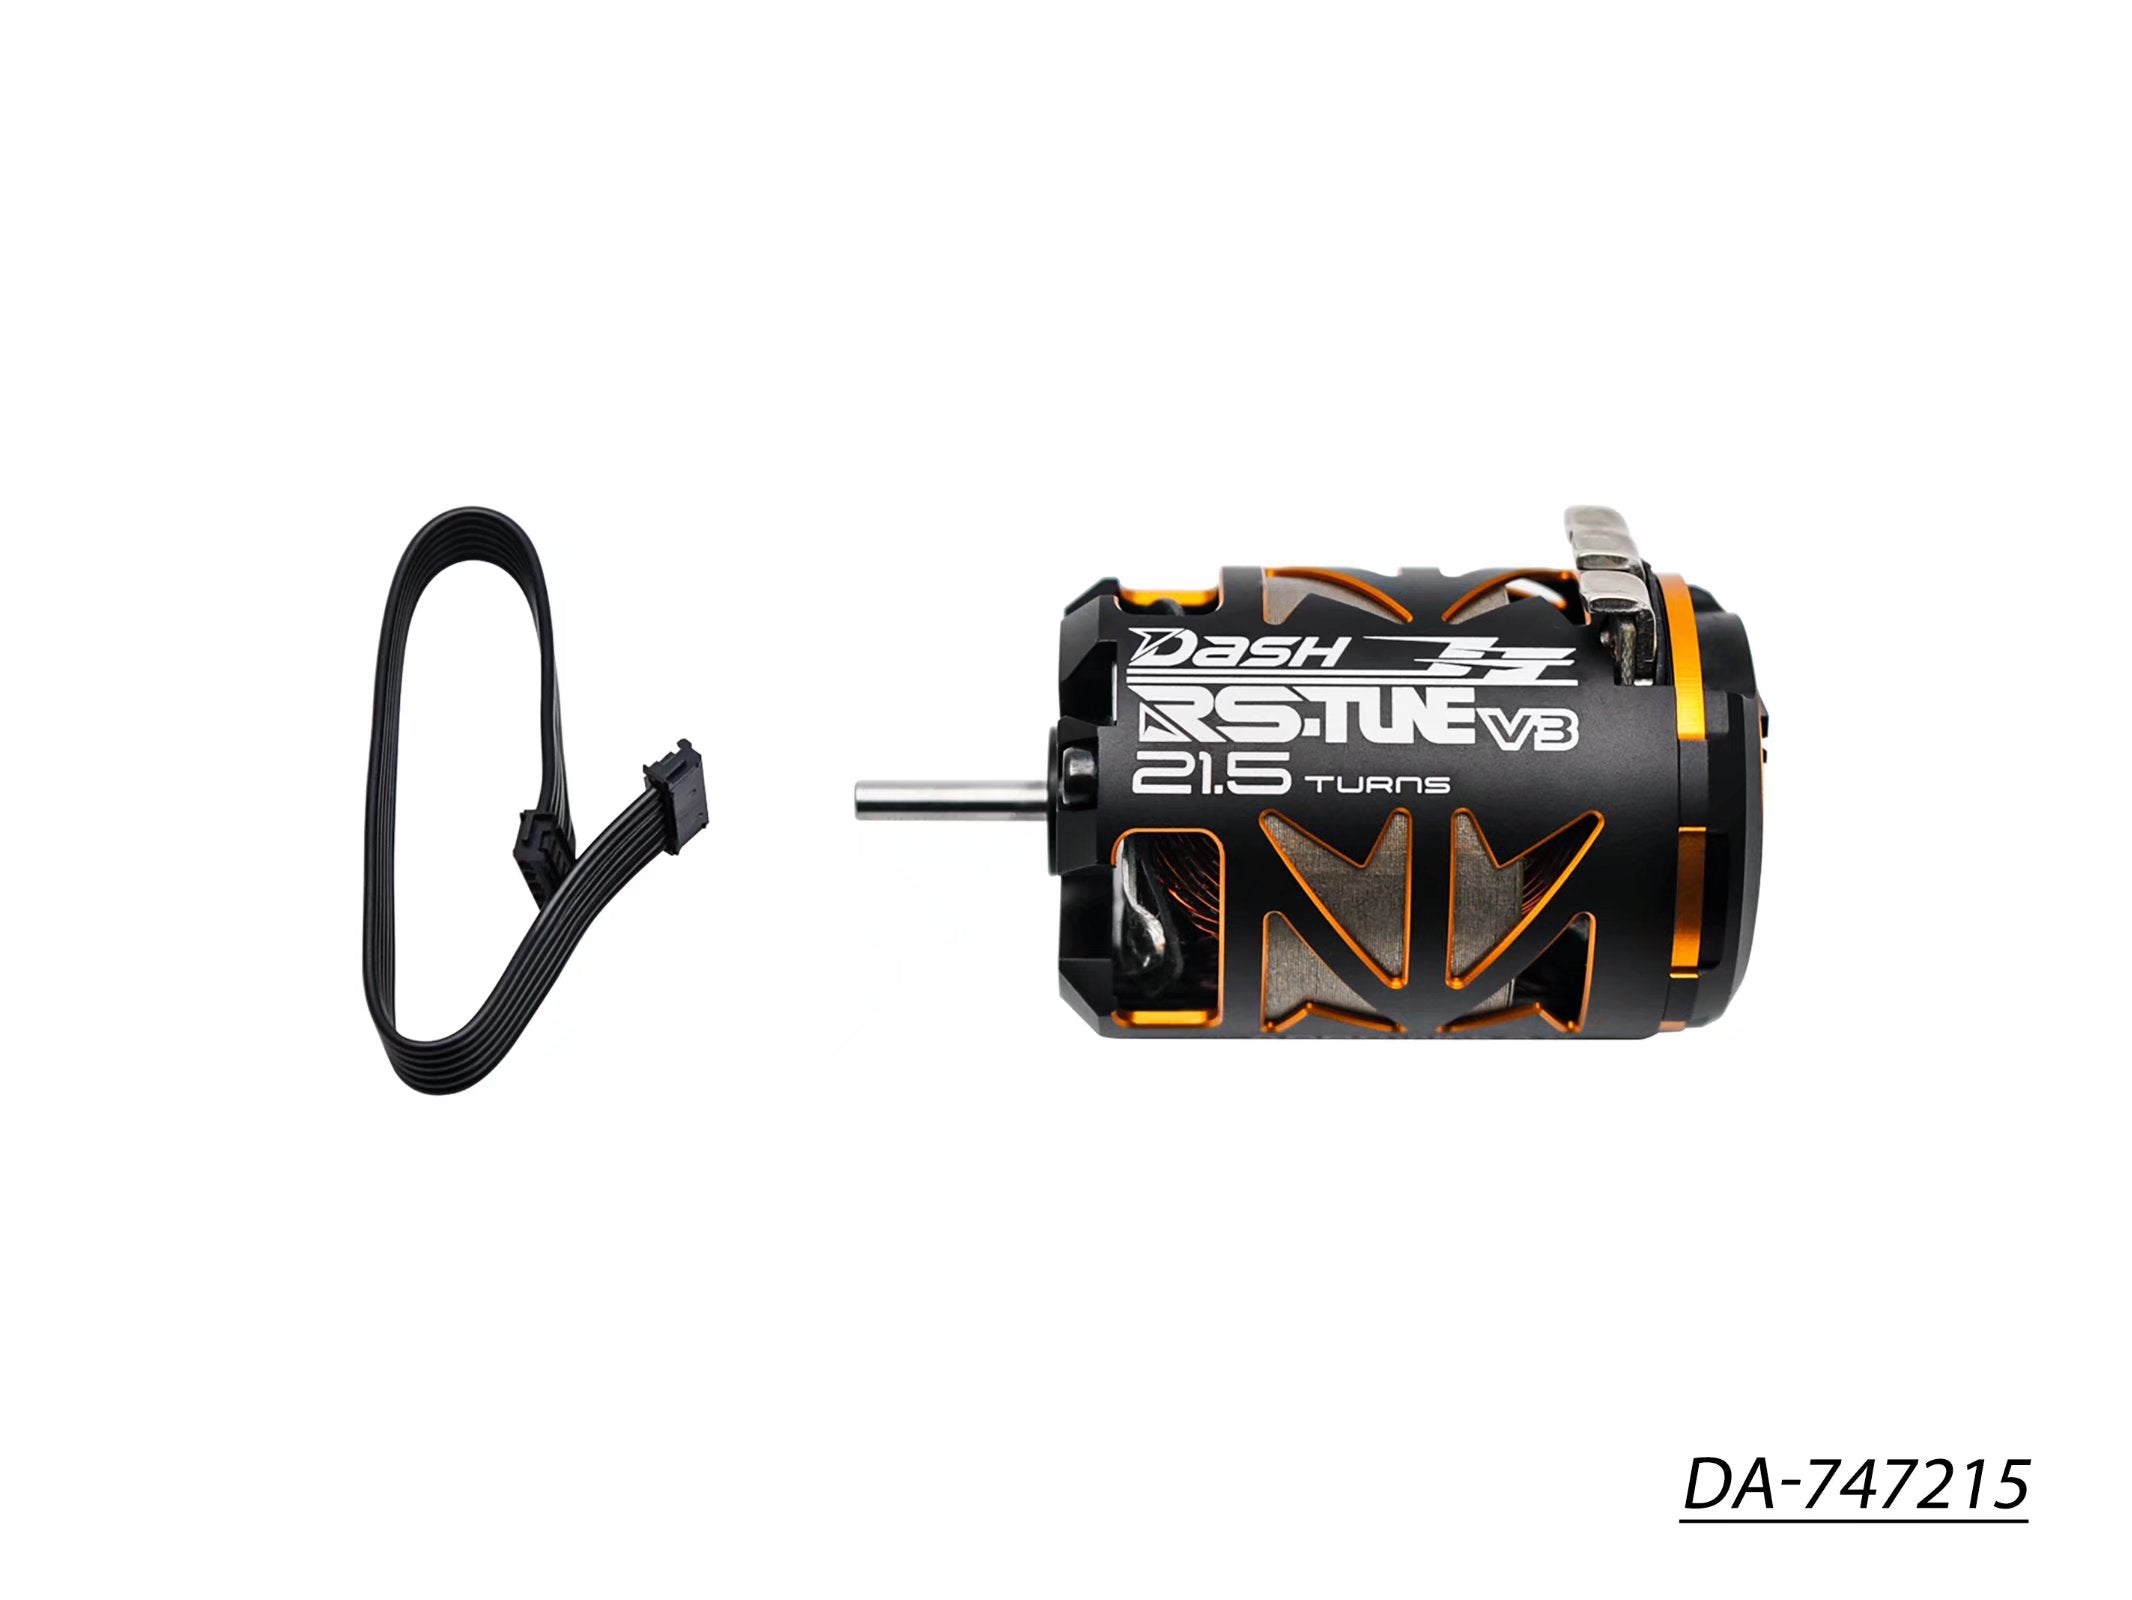 Dash RS-Tune V3 (Outlaw type) 540 Sensored Brushless Motor 13.5T 